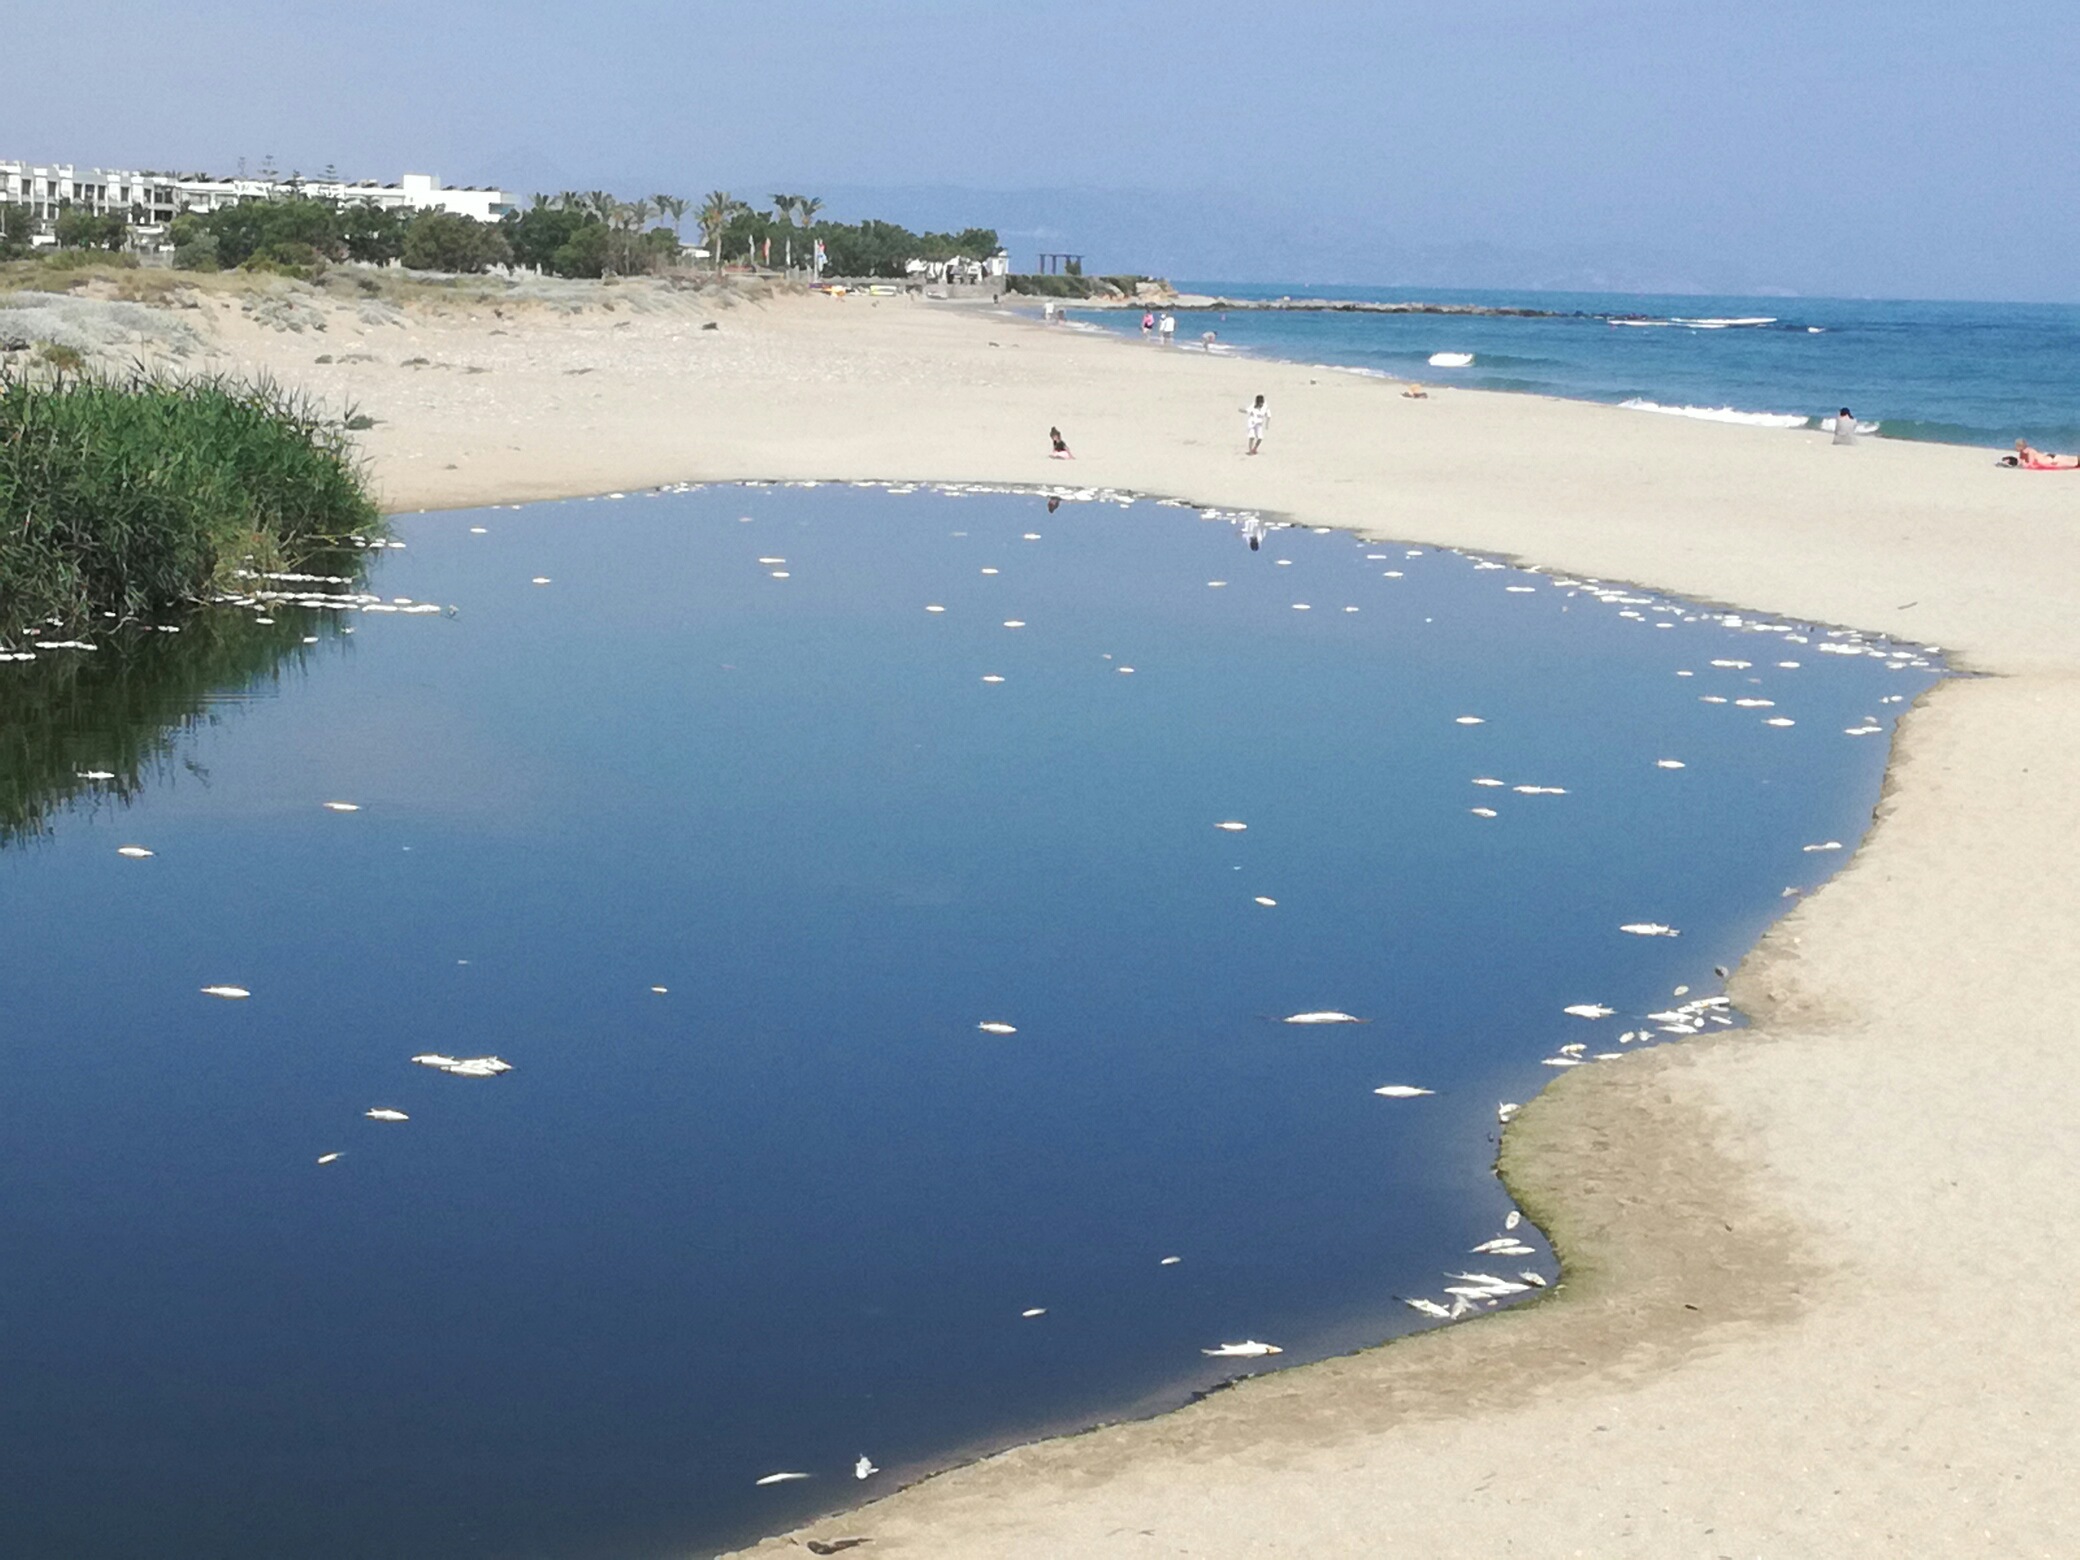 Ηράκλειο: Φρικτό θέαμα με εκατοντάδες νεκρά ψάρια στην εκβολή του Αποσελέμη